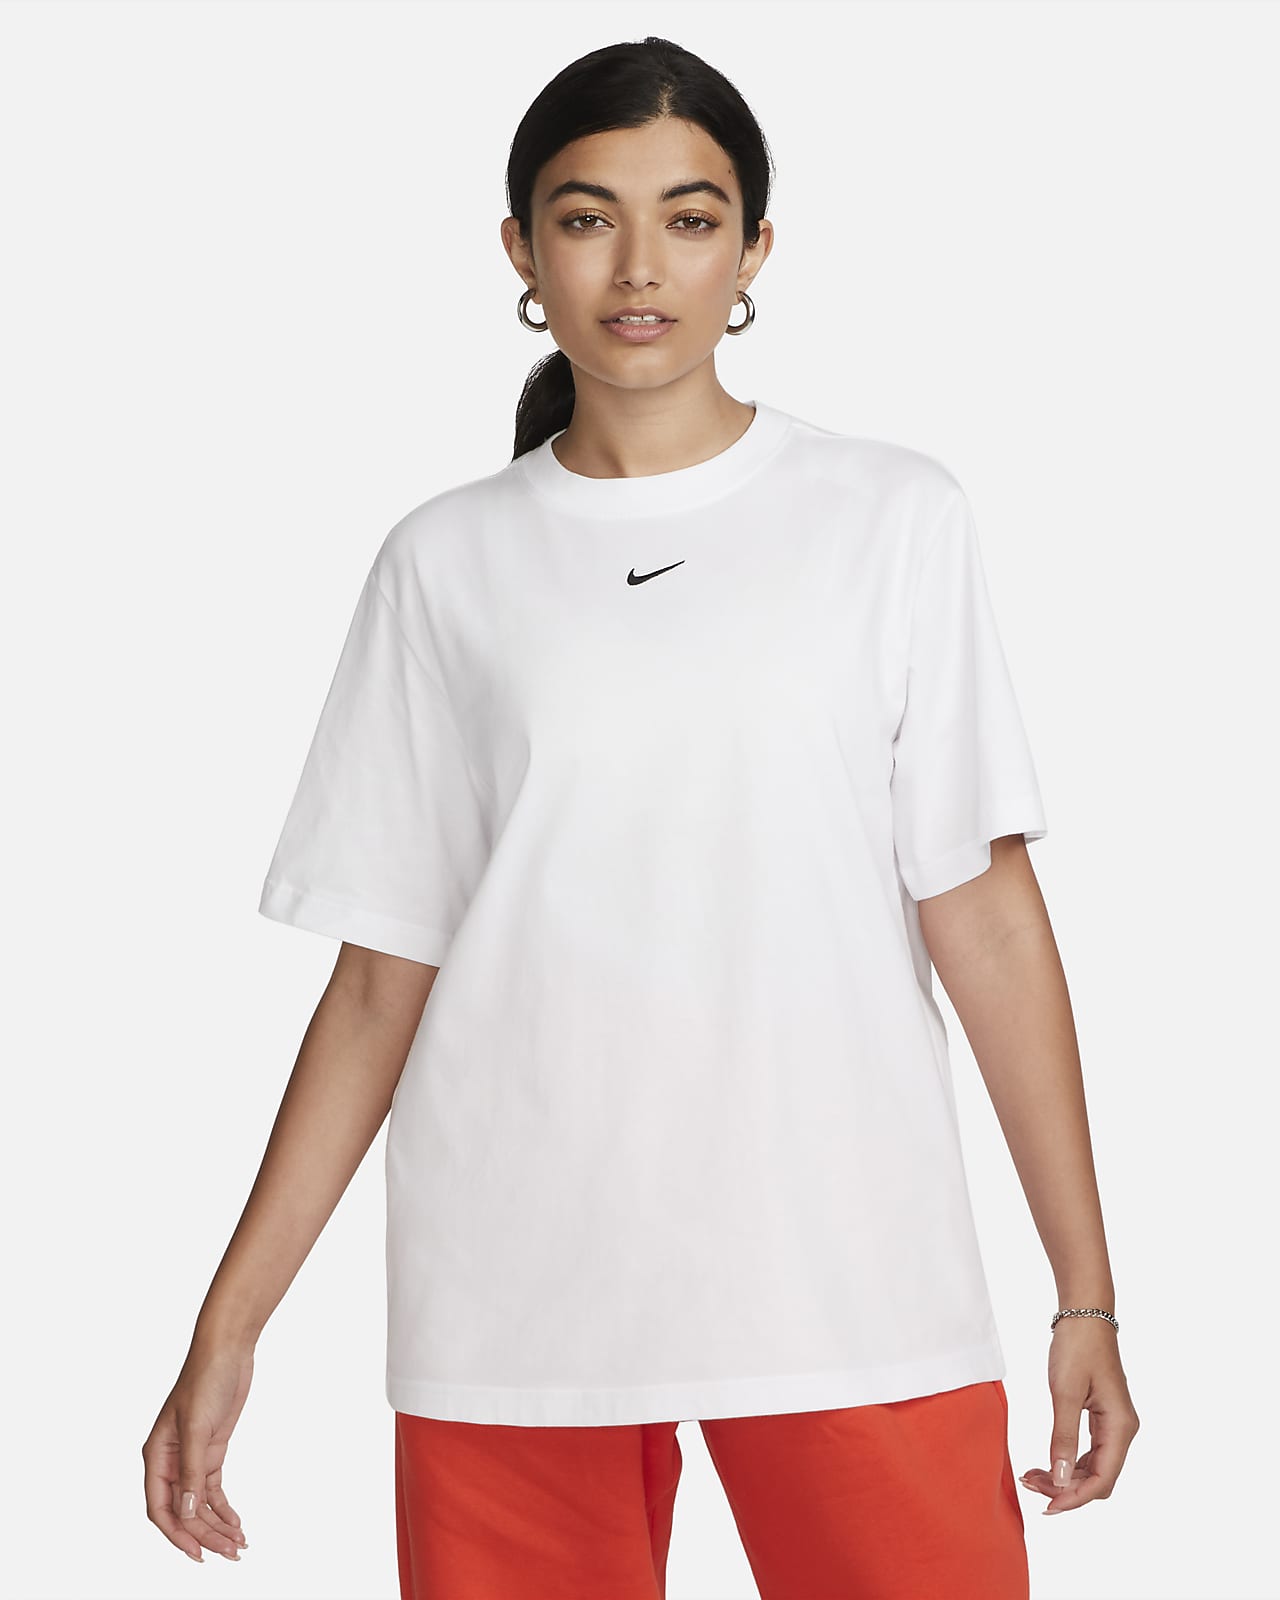 T-shirt Nike Sportswear Essential - Donna